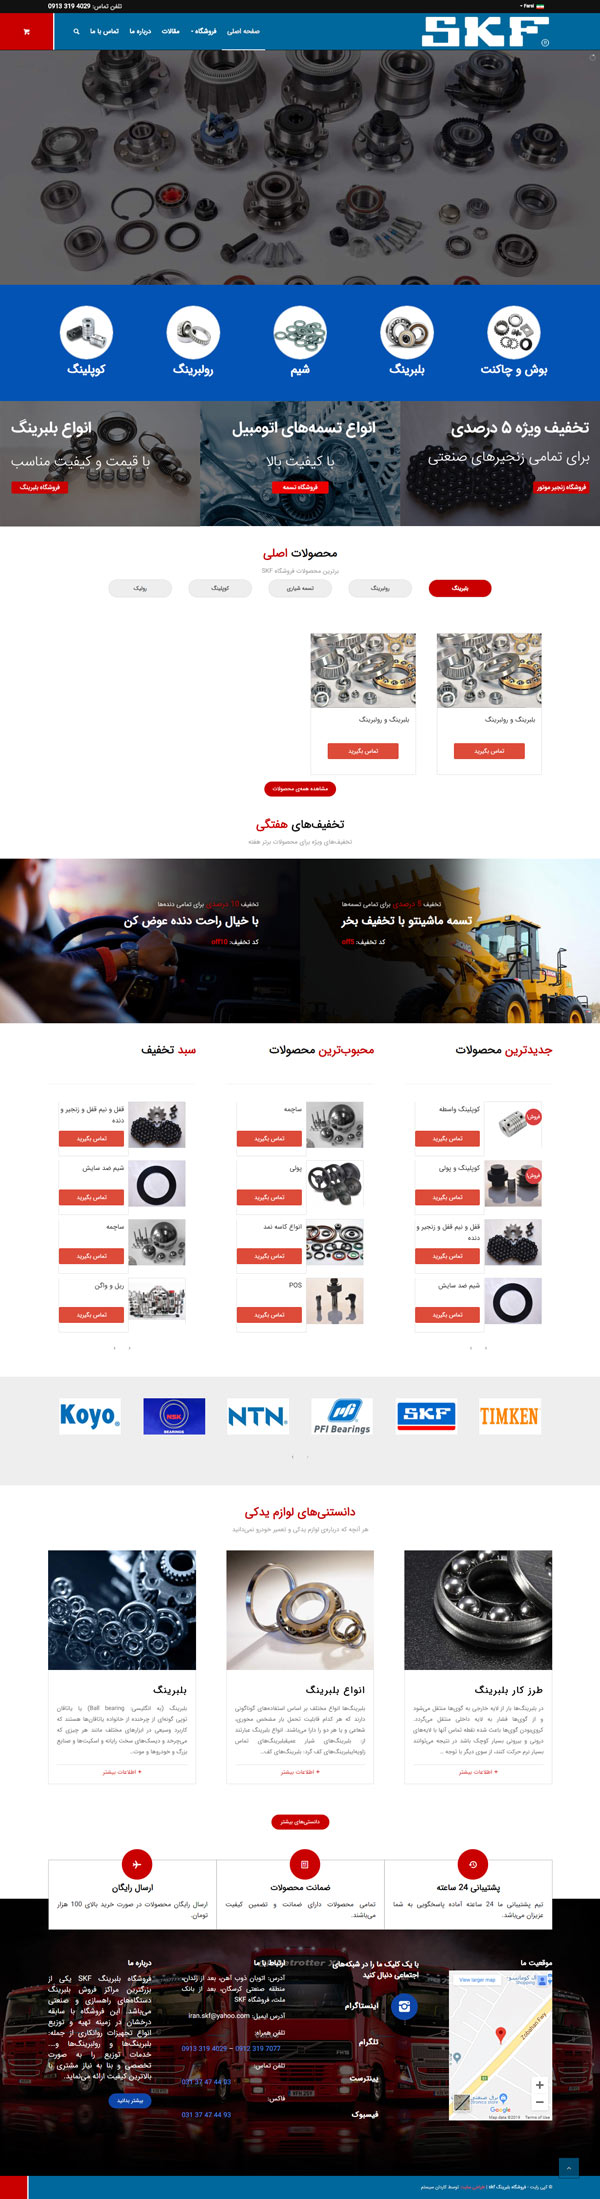 طراحی سایت بلبرینگ SKF | فروشگاه قطعات ماشین آلات سنگین و راهسازی